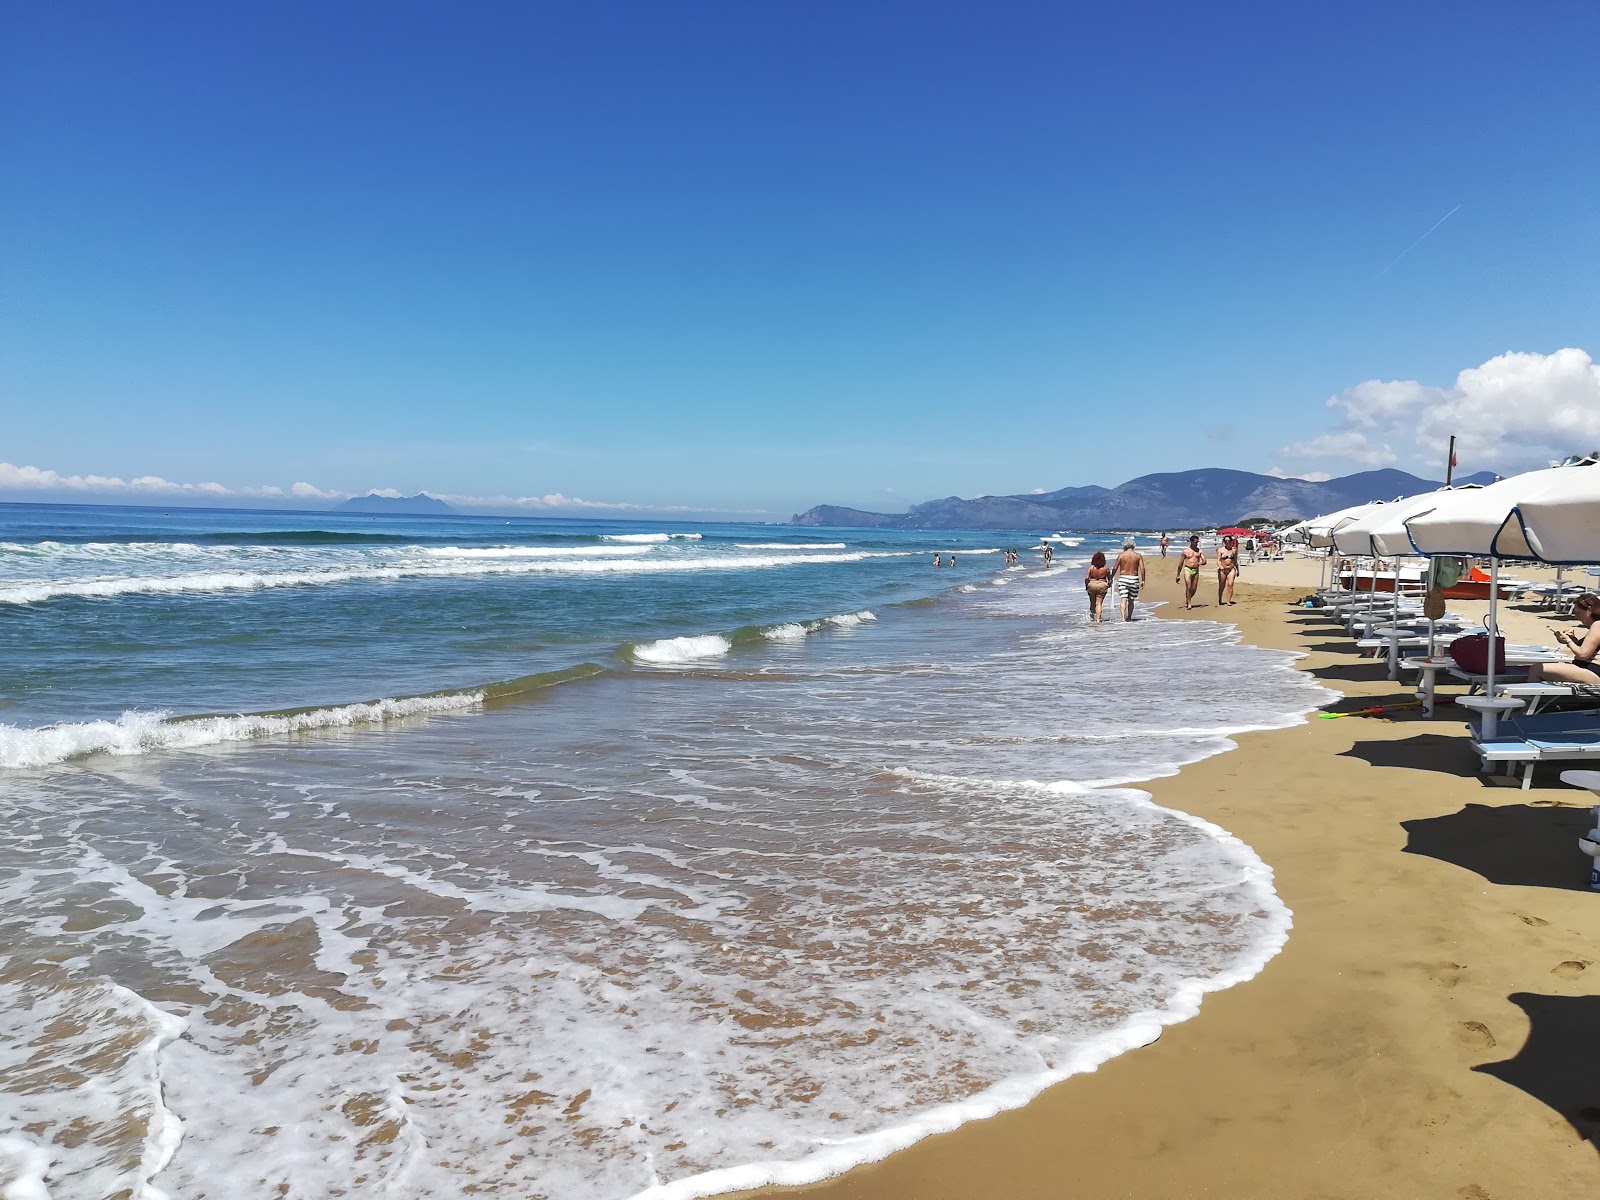 Spiaggia di Sperlonga'in fotoğrafı i̇nce kahverengi kum yüzey ile